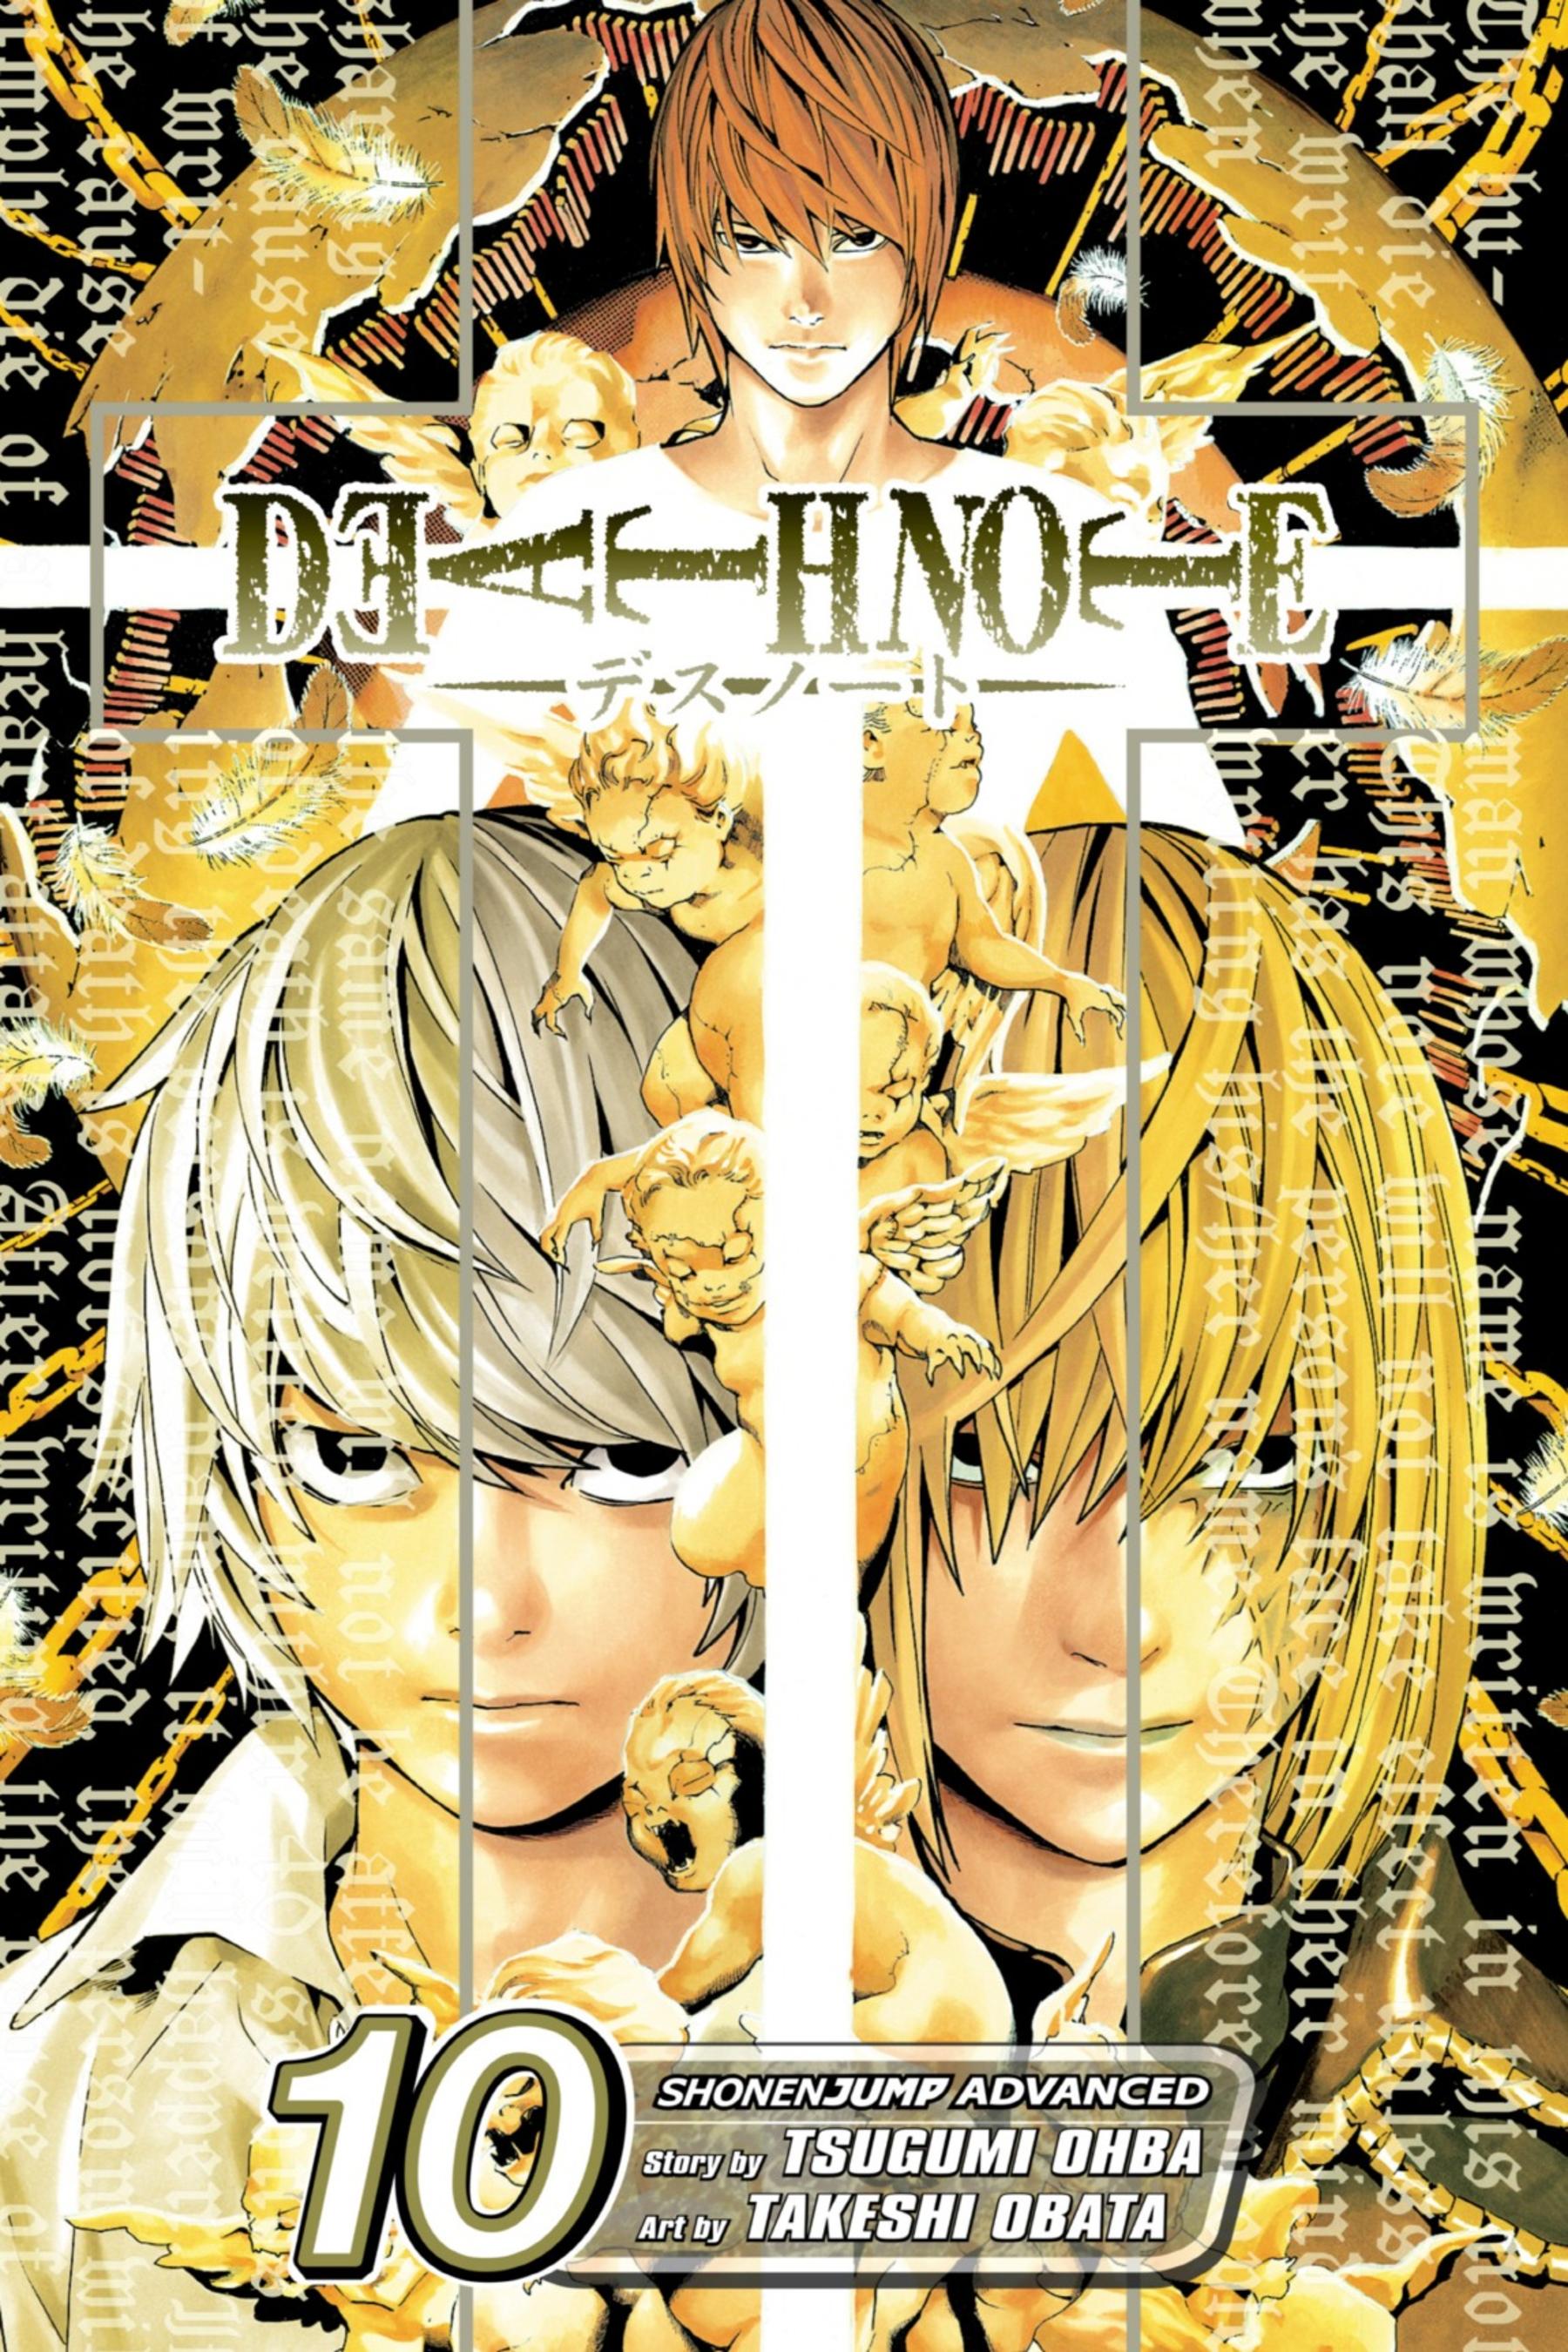 Diferença entre o Mangá e Anime Death Note(Spoiler)